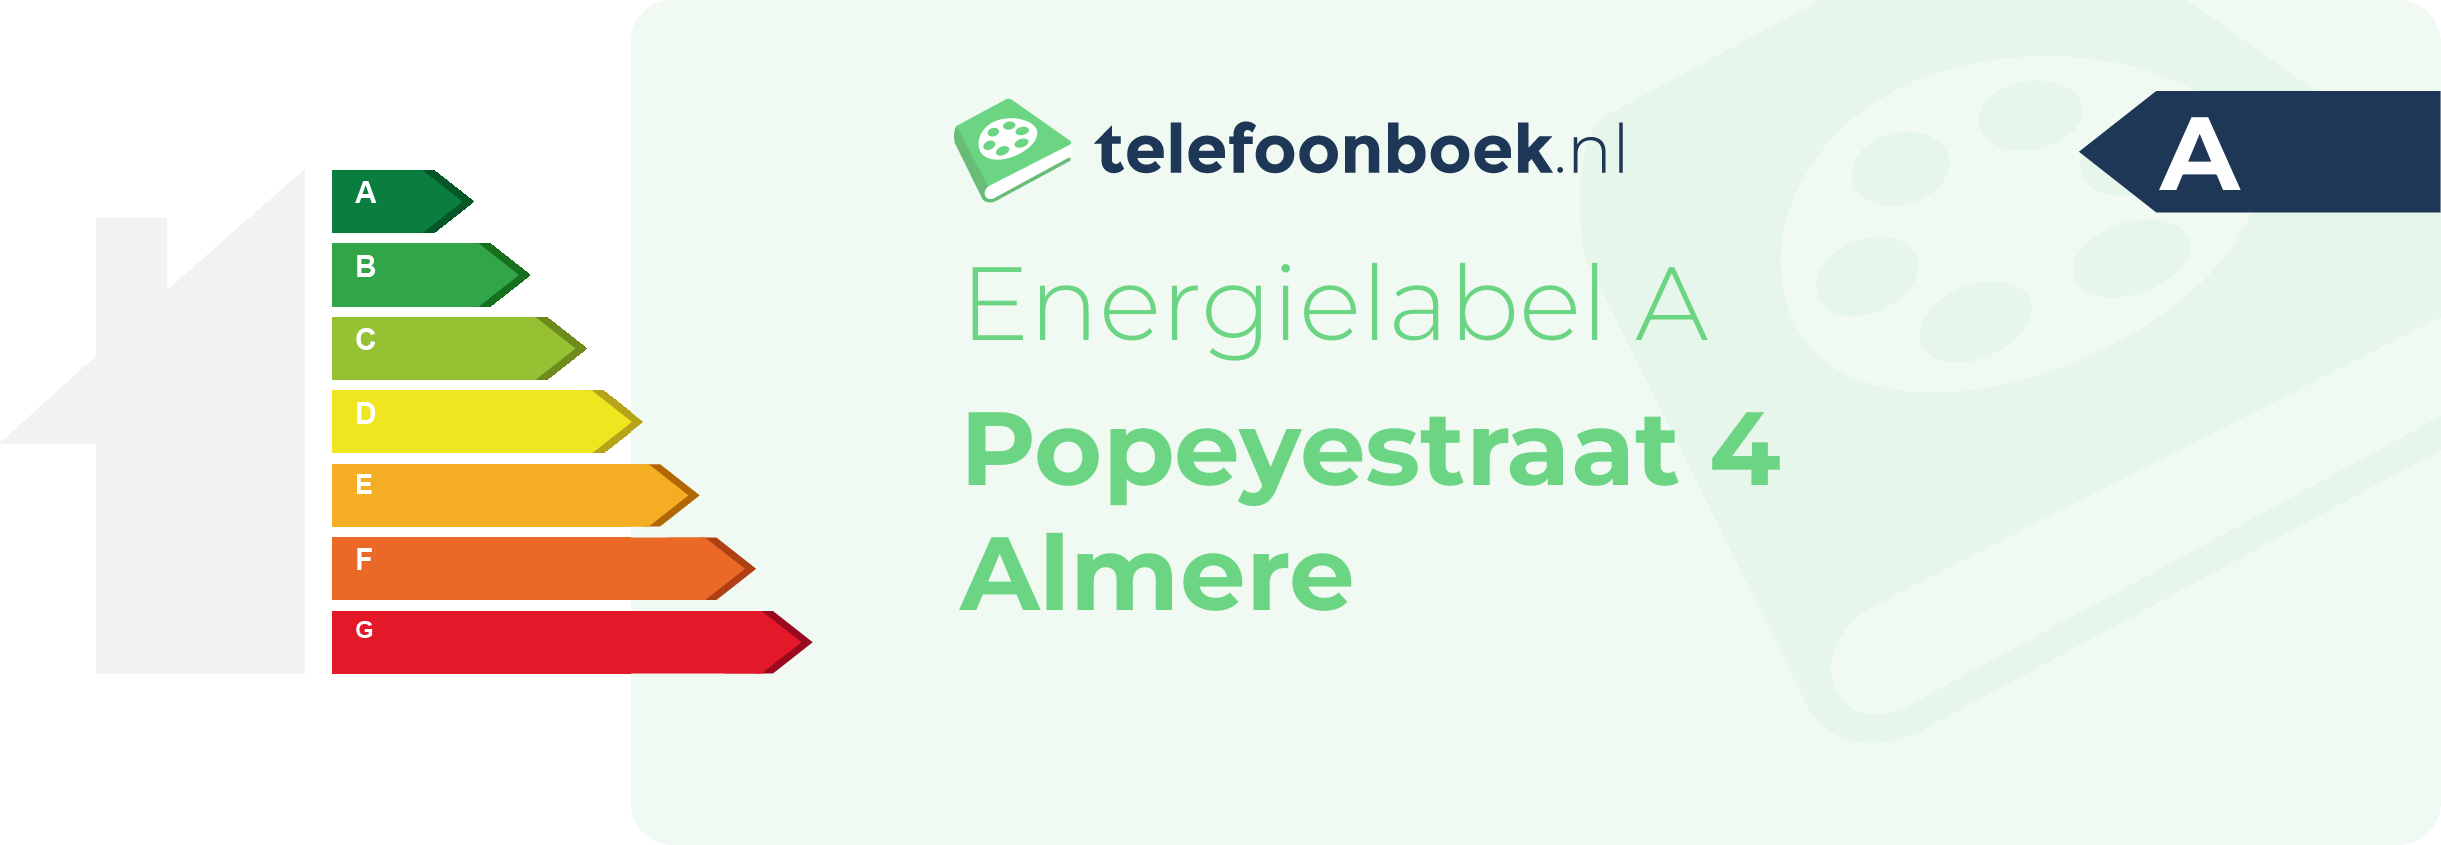 Energielabel Popeyestraat 4 Almere